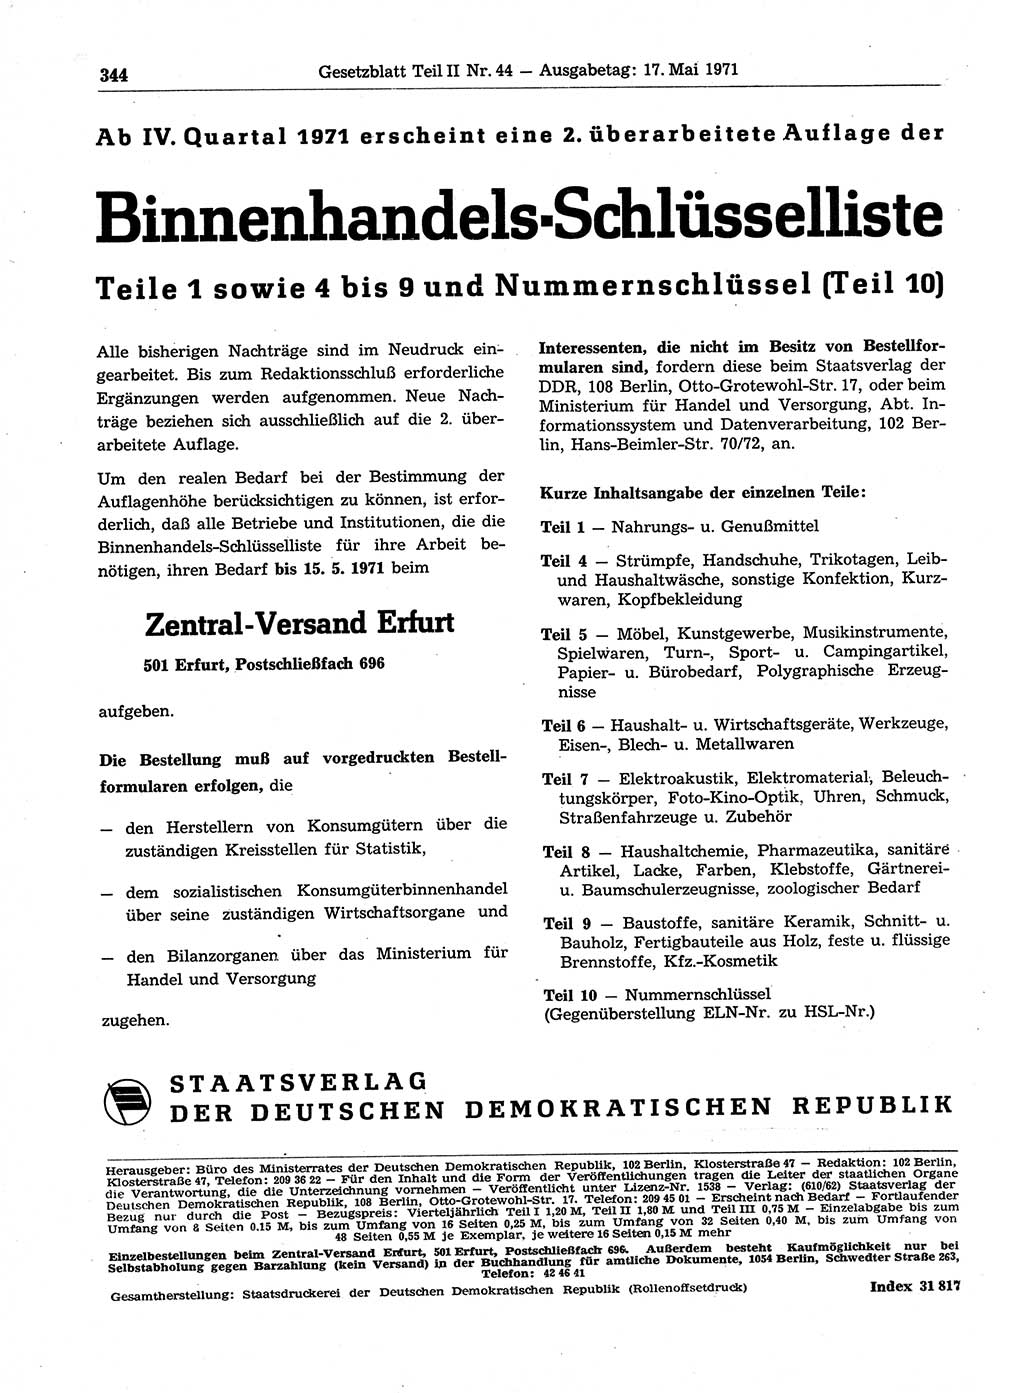 Gesetzblatt (GBl.) der Deutschen Demokratischen Republik (DDR) Teil ⅠⅠ 1971, Seite 344 (GBl. DDR ⅠⅠ 1971, S. 344)